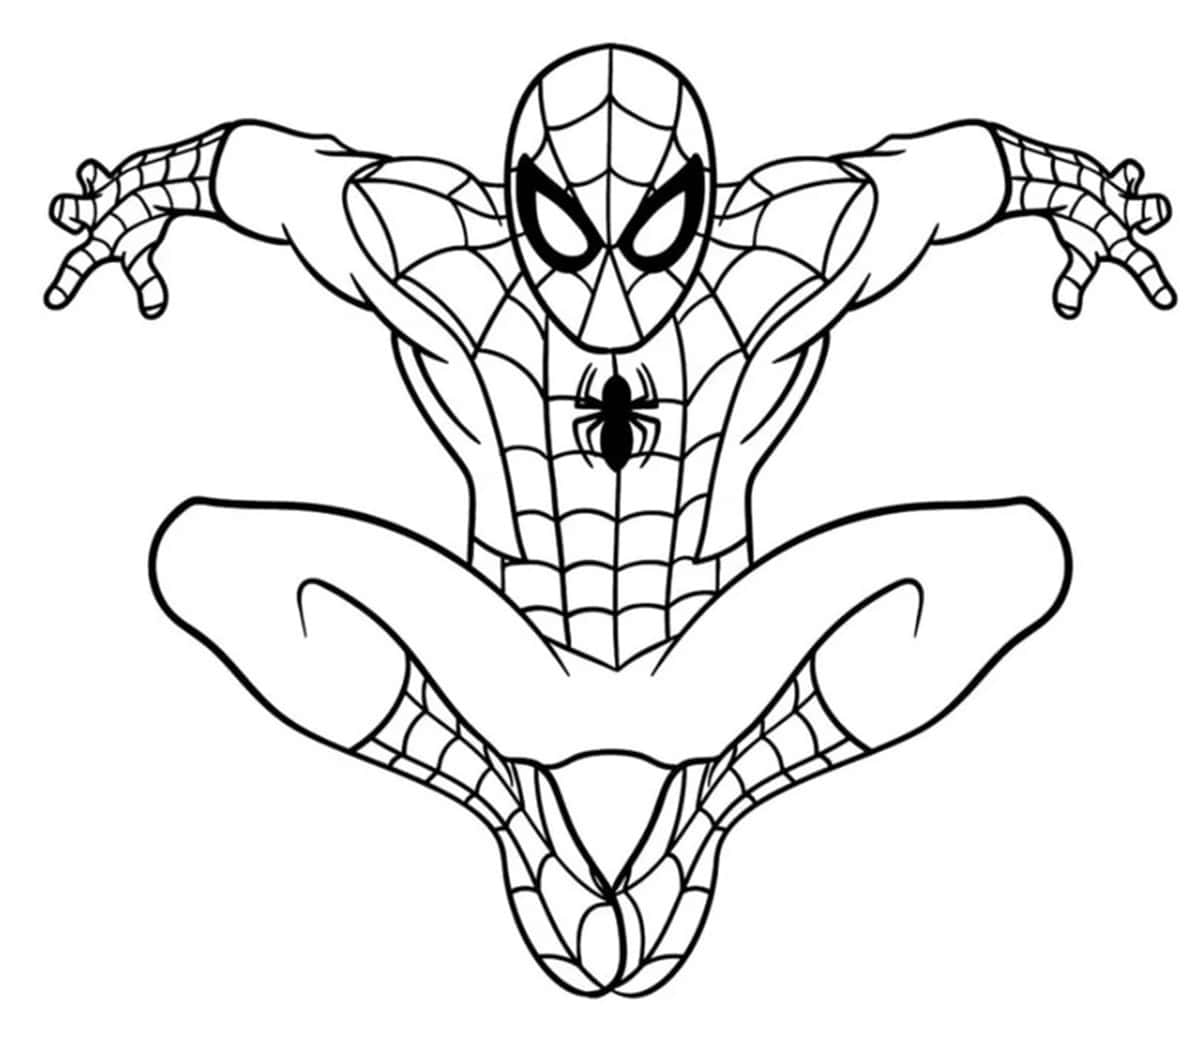 Dibujos de Spiderman para colorear